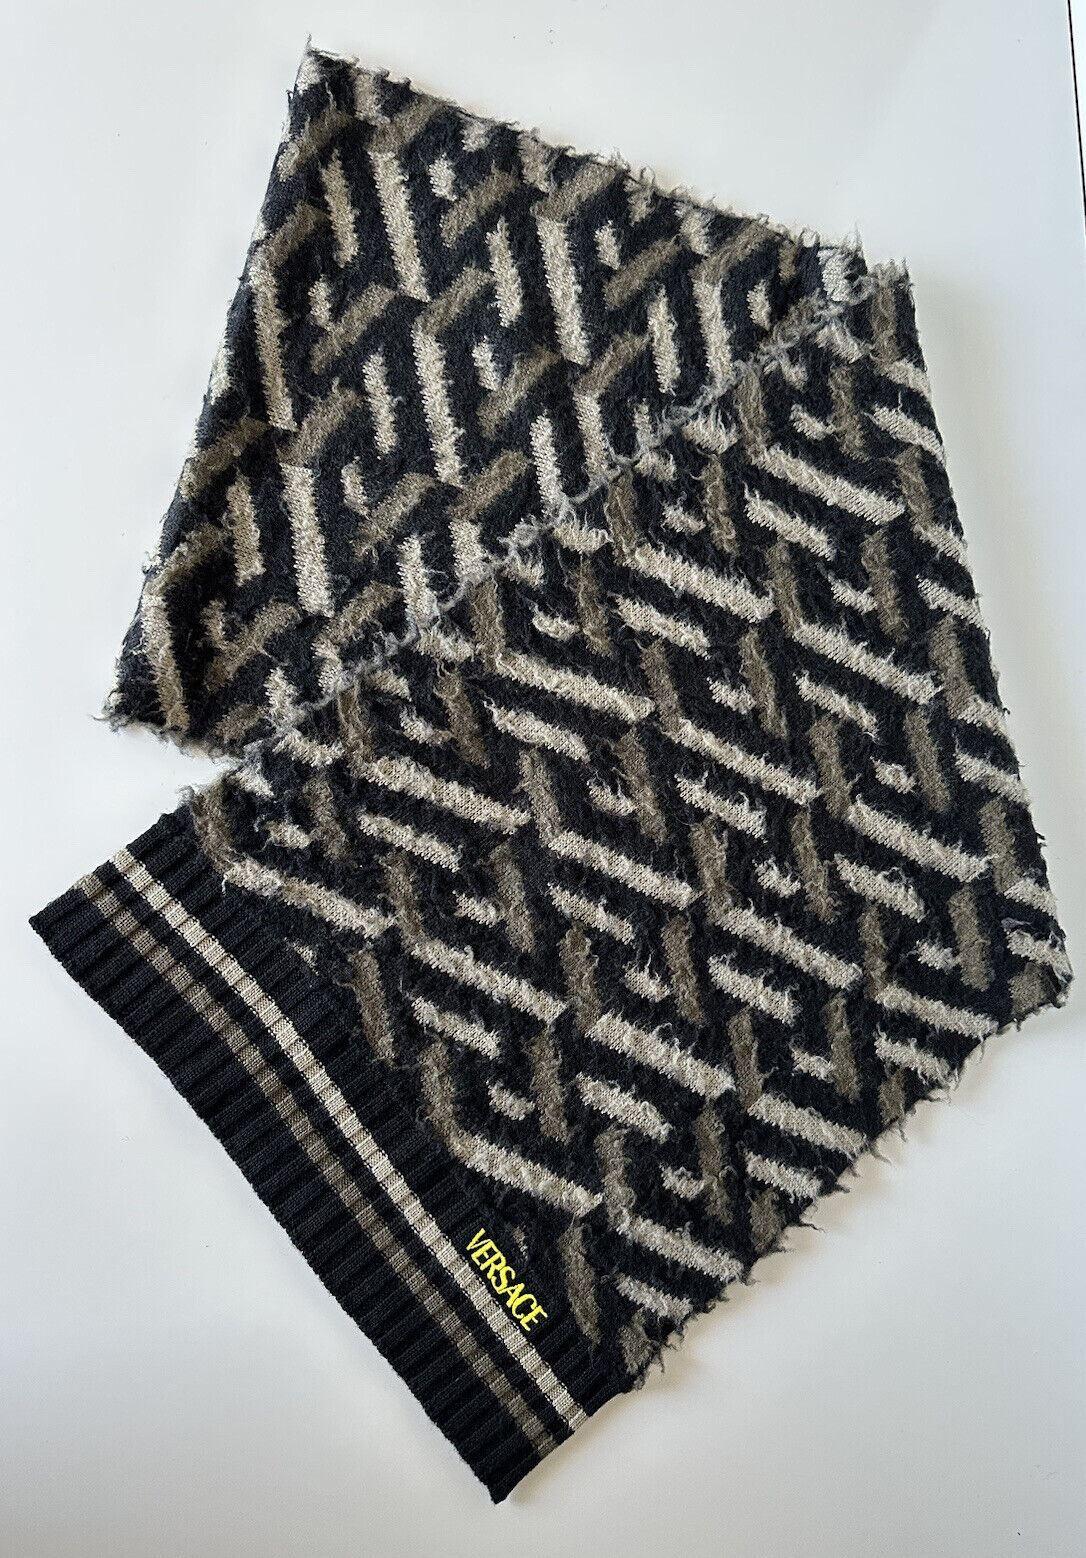 NWT $595 Шарф Versace Knit из жаккардовой шерсти с начесом, черный/серый, 14Wx72L IT 1002258 